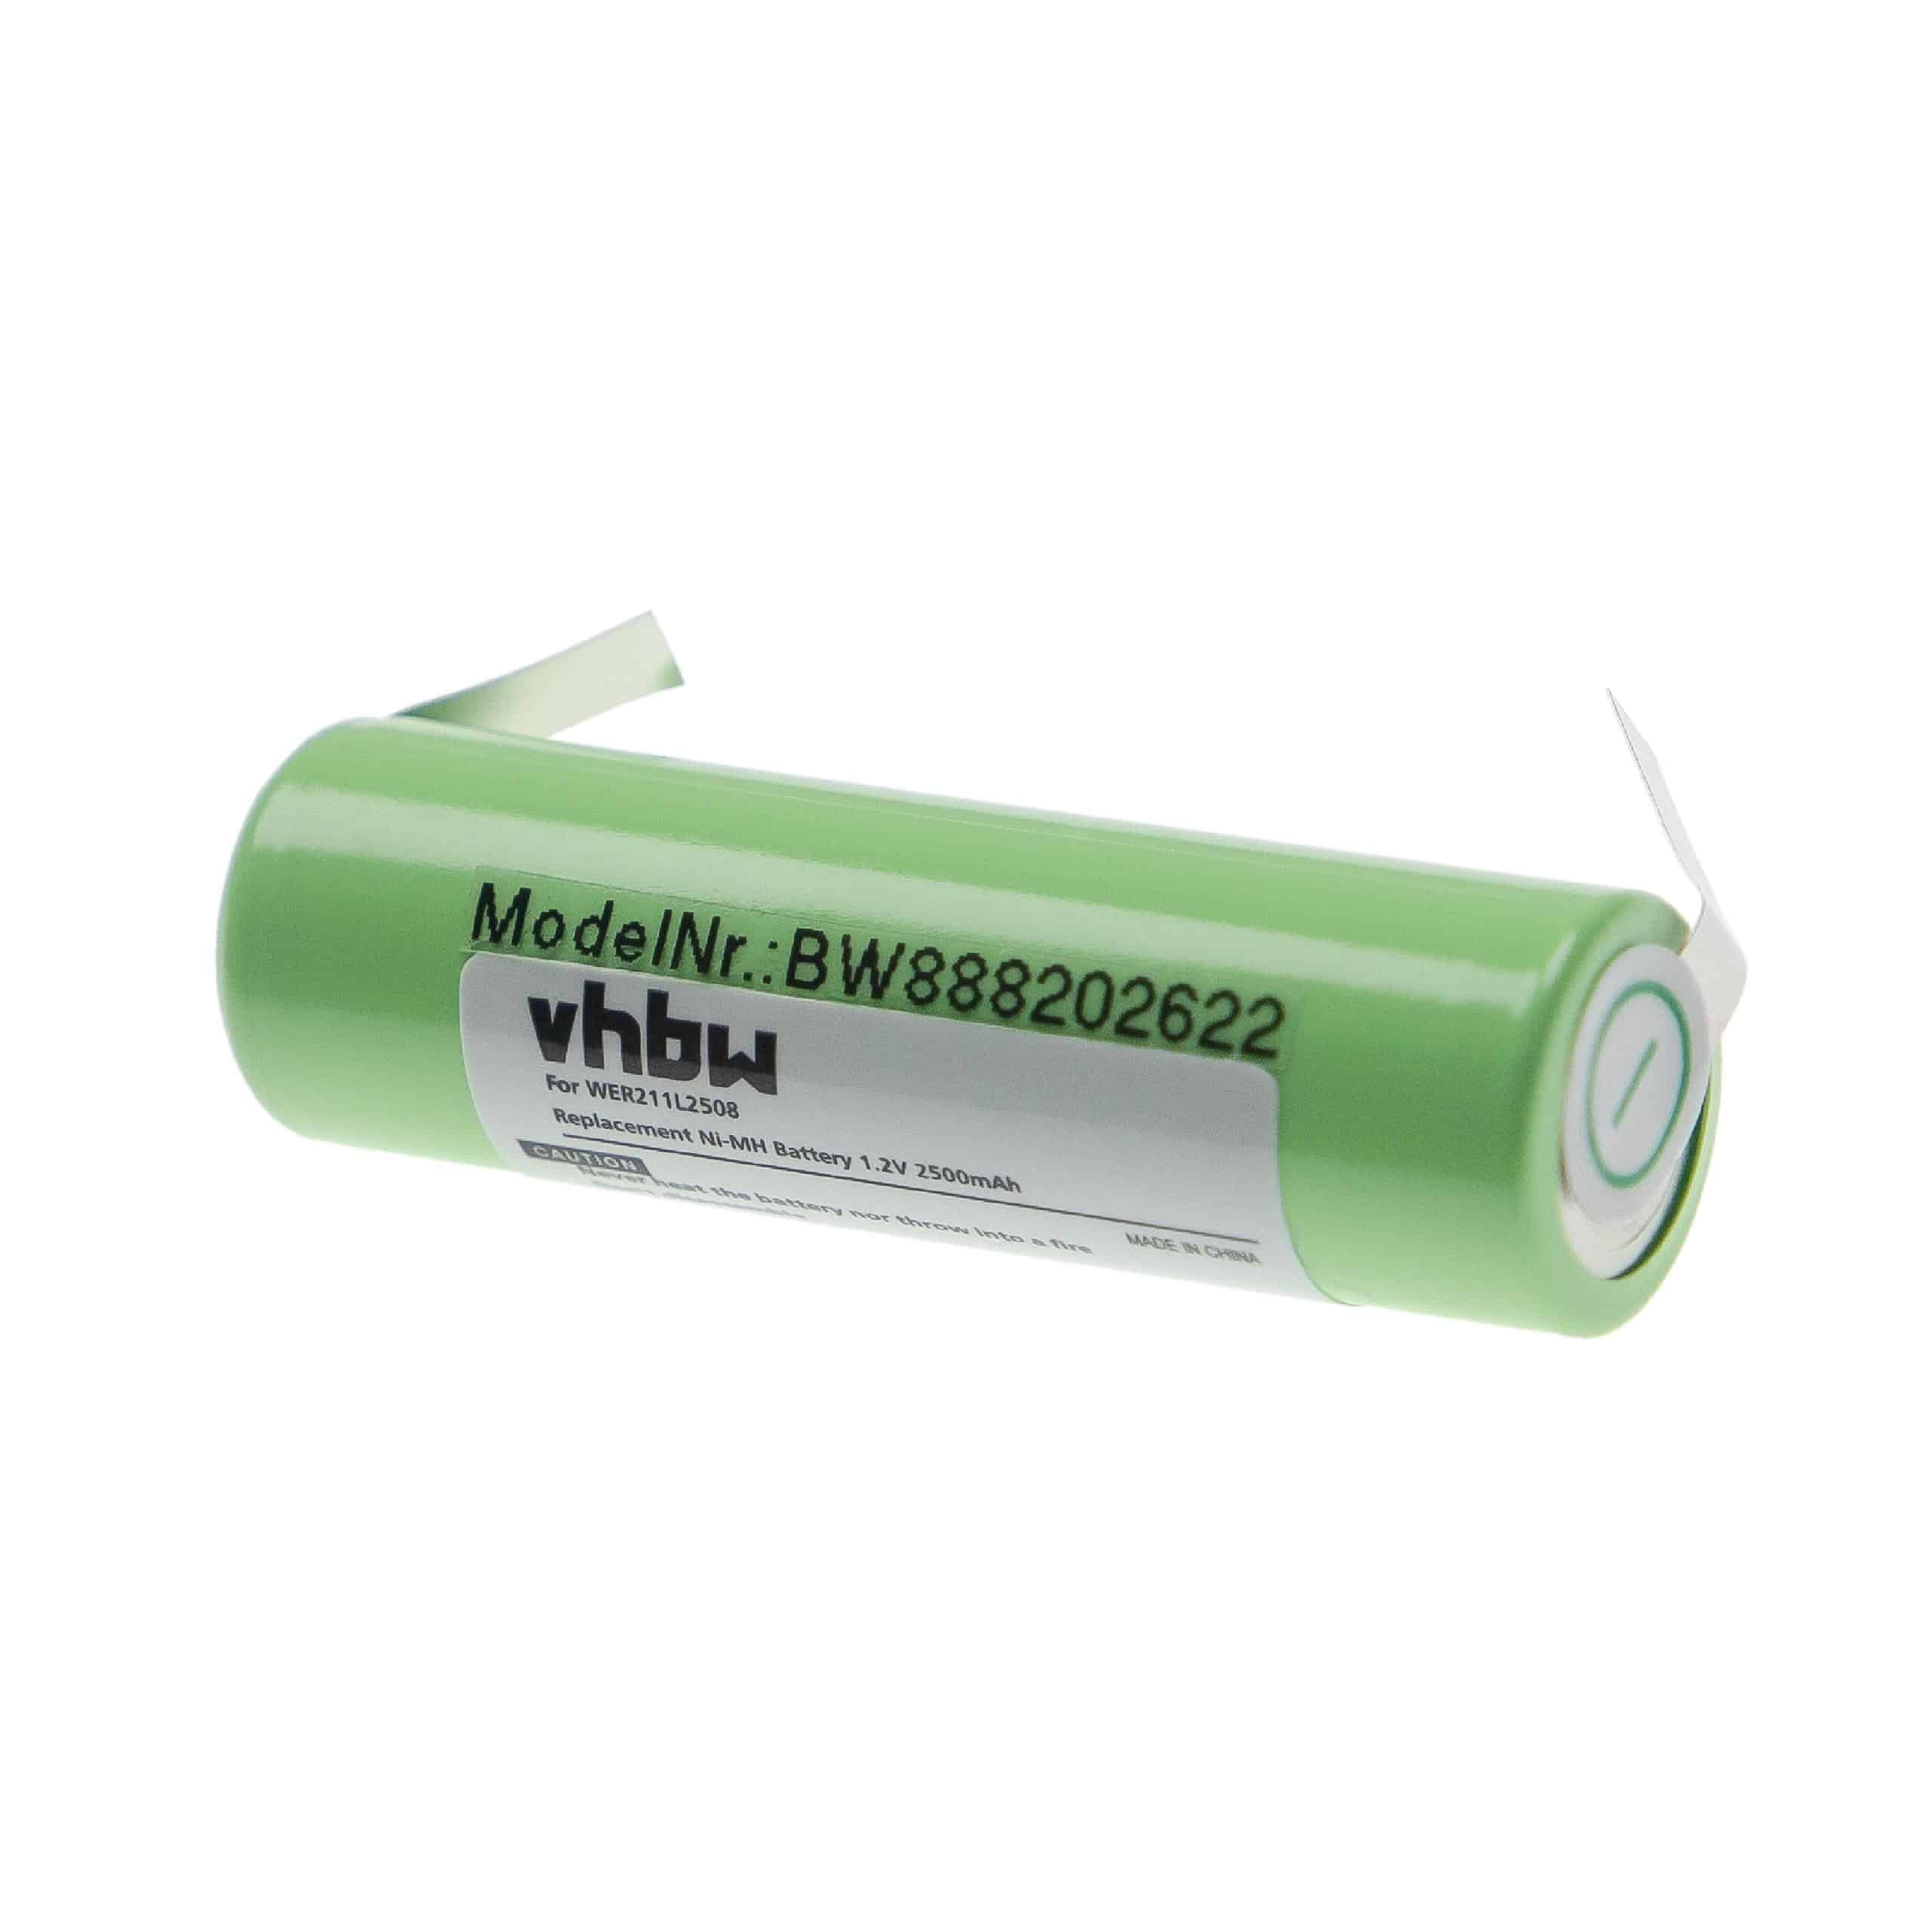 Batterie remplace Panasonic WER211L2508 pour rasoir électrique - 2500mAh 1,2V NiMH